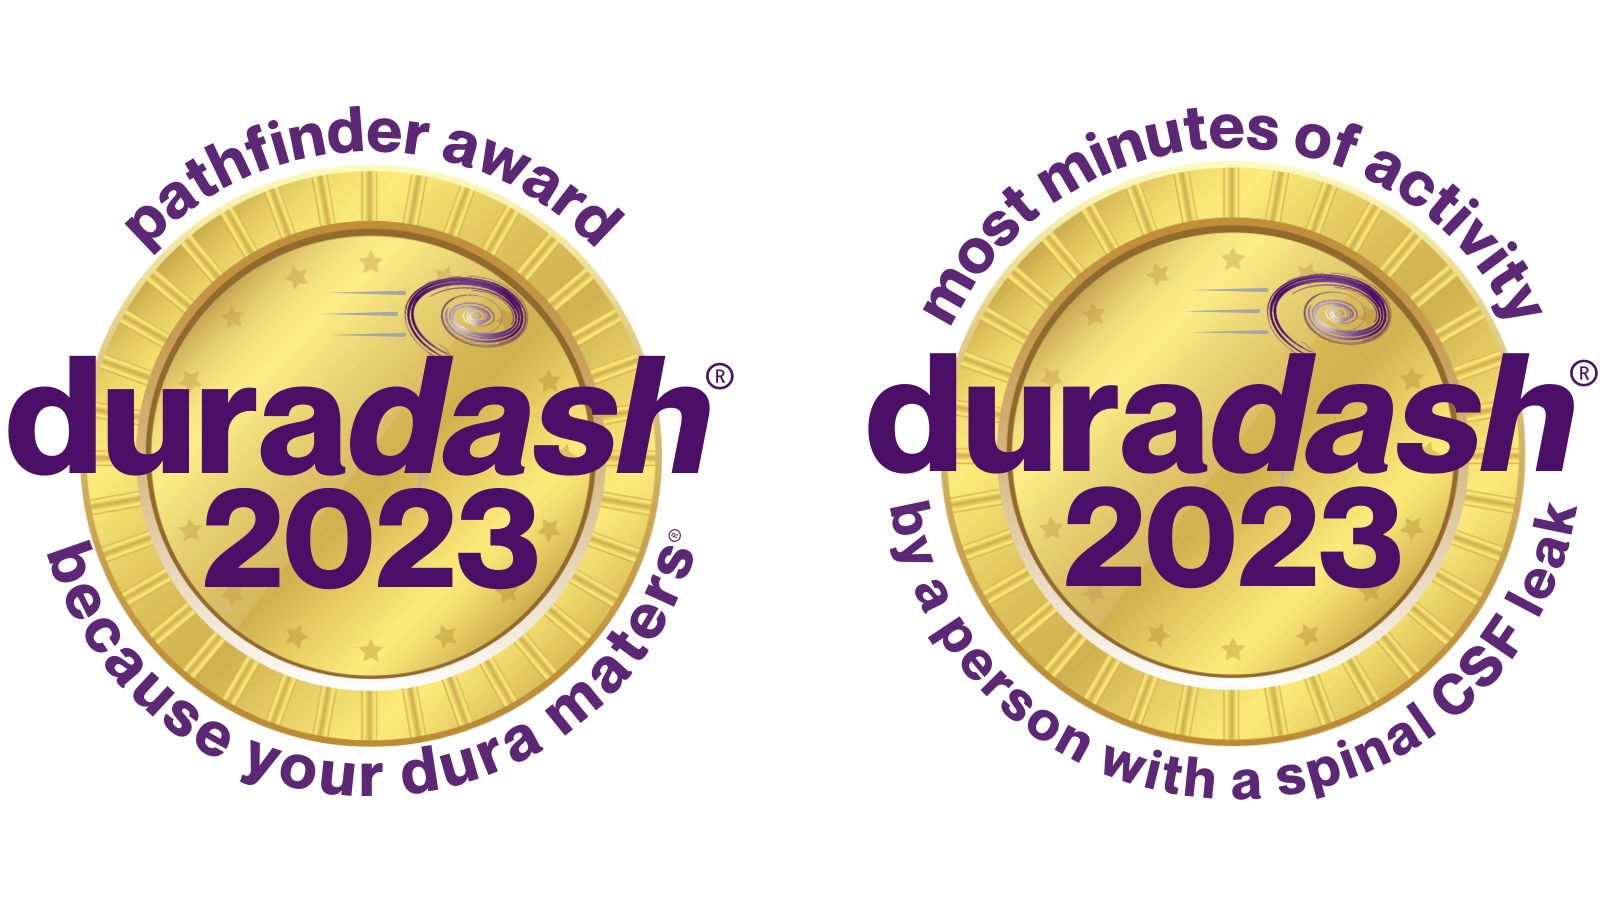 duradash awards